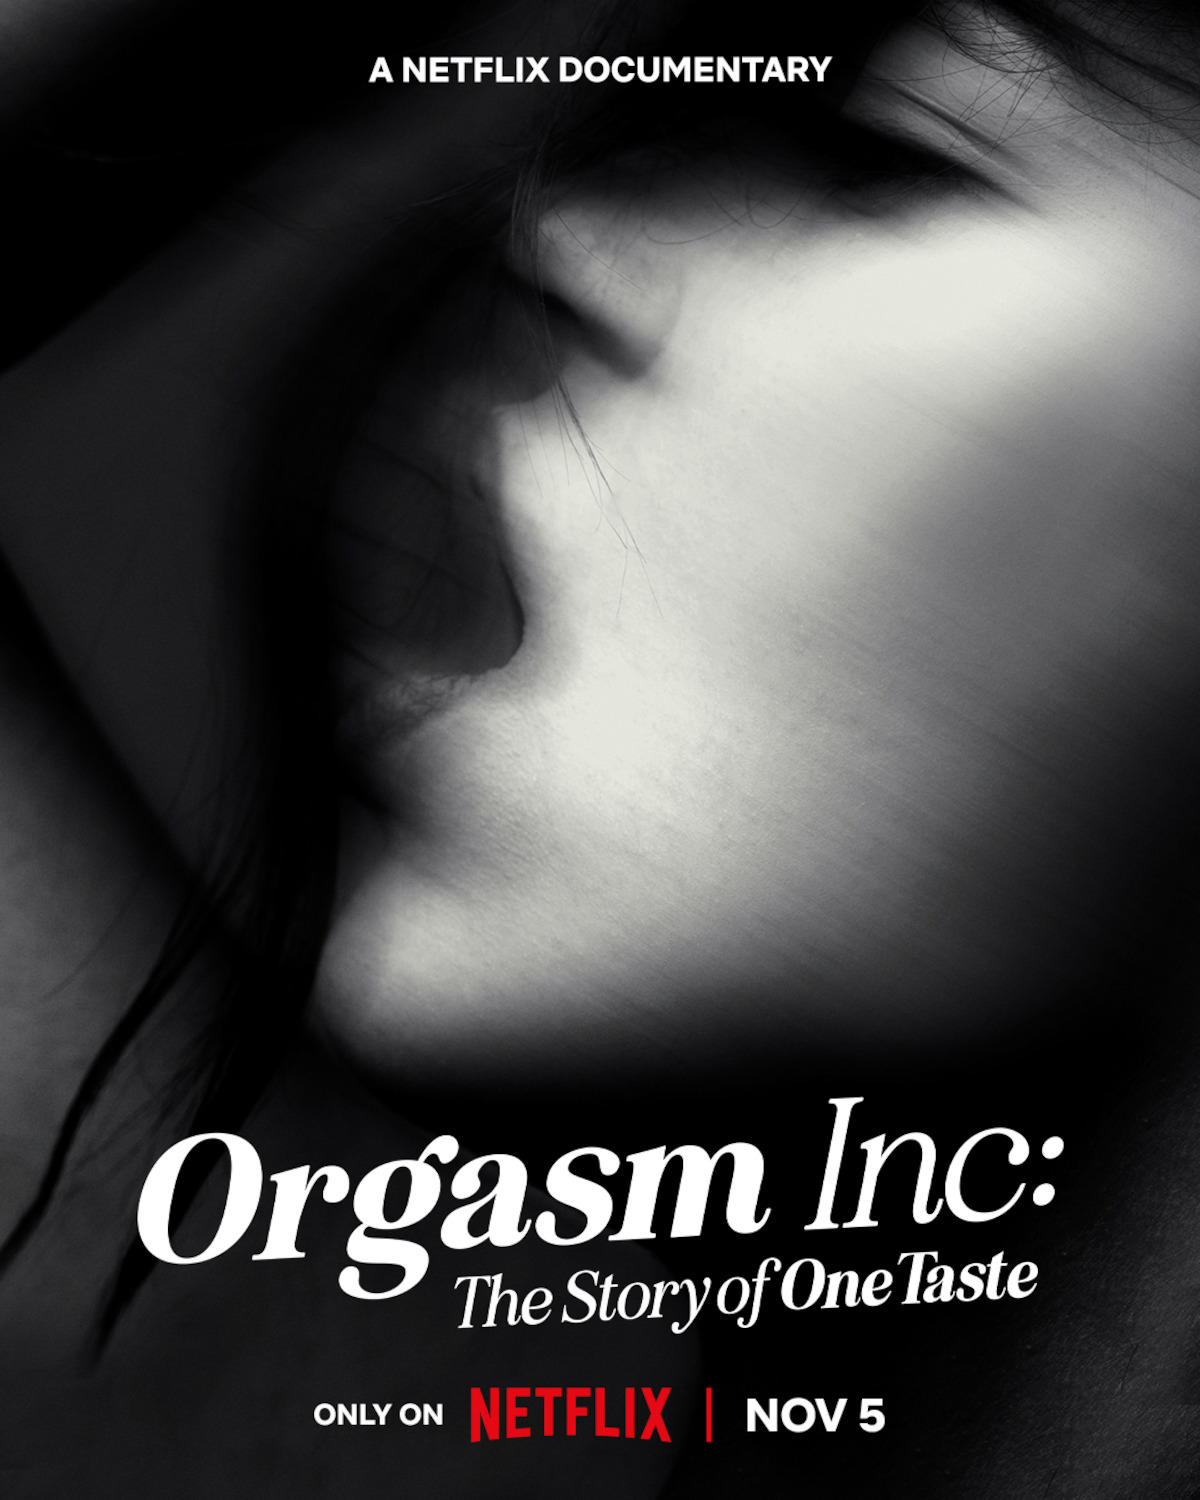 OneTaste Documentary About Nicole Daedone Orgasm Inc. pic